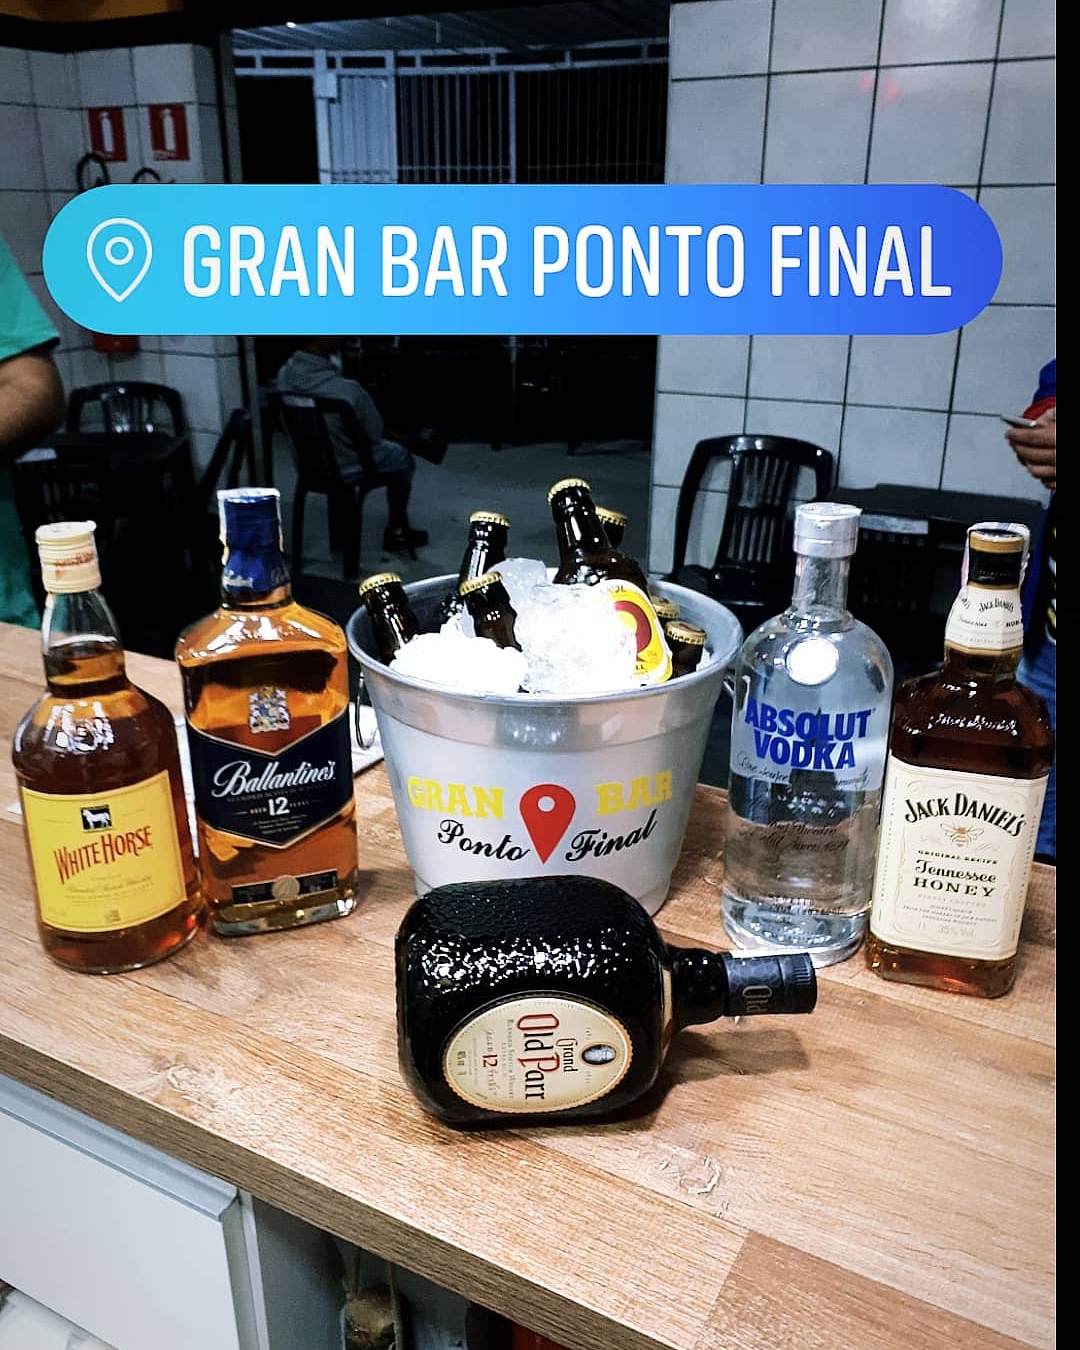 Gran Bar Ponto Final